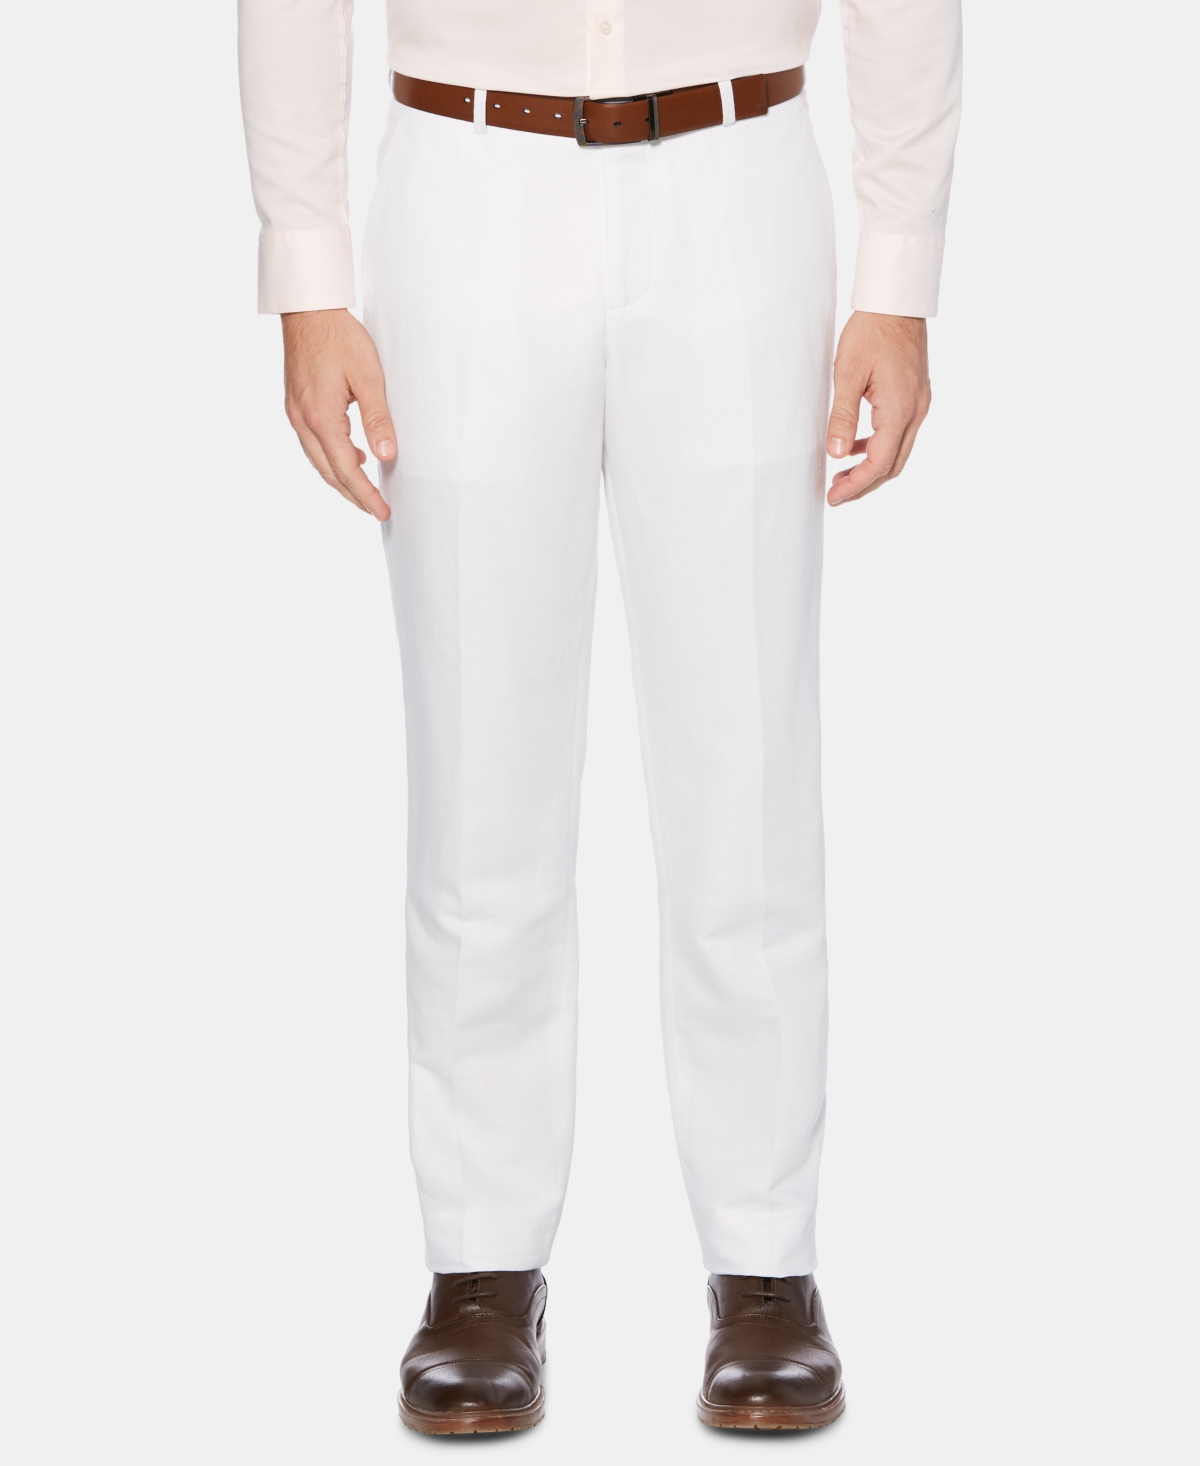 Perry Ellis Men's Portfolio Modern-Fit Linen/Cotton Solid Dress Pants - Off White